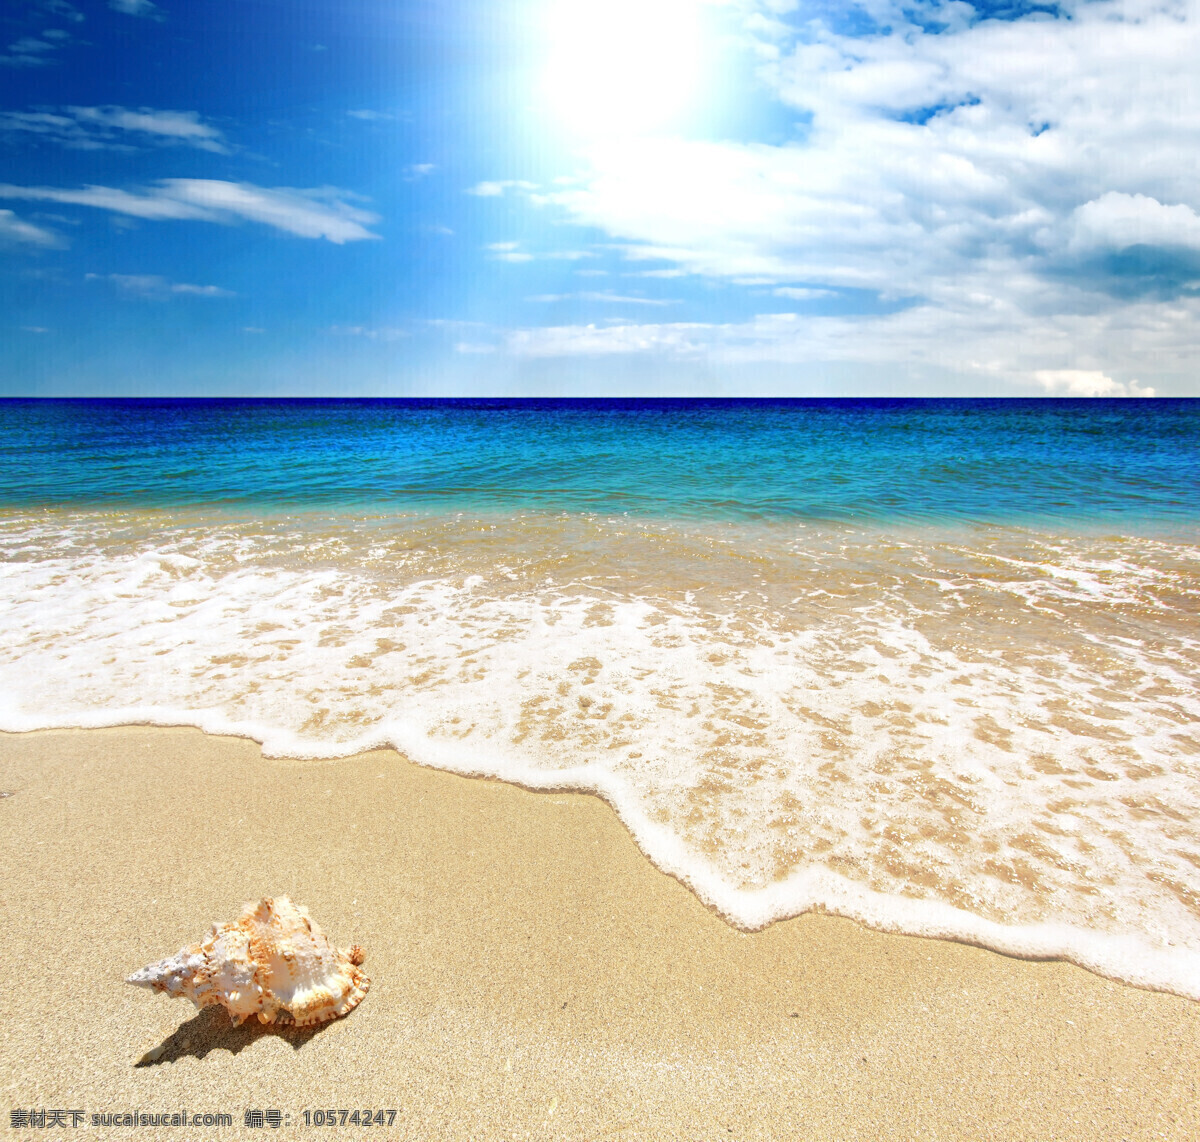 美丽 夏日 海边 风景 高清 美丽海滩 海边风景 天空 蓝天白云 夏天 夏季 沙滩 海滩 海平面 大海 海洋 海浪 海螺 海景 景色 美景 摄影图 高清图片 海洋海边 自然景观 白色